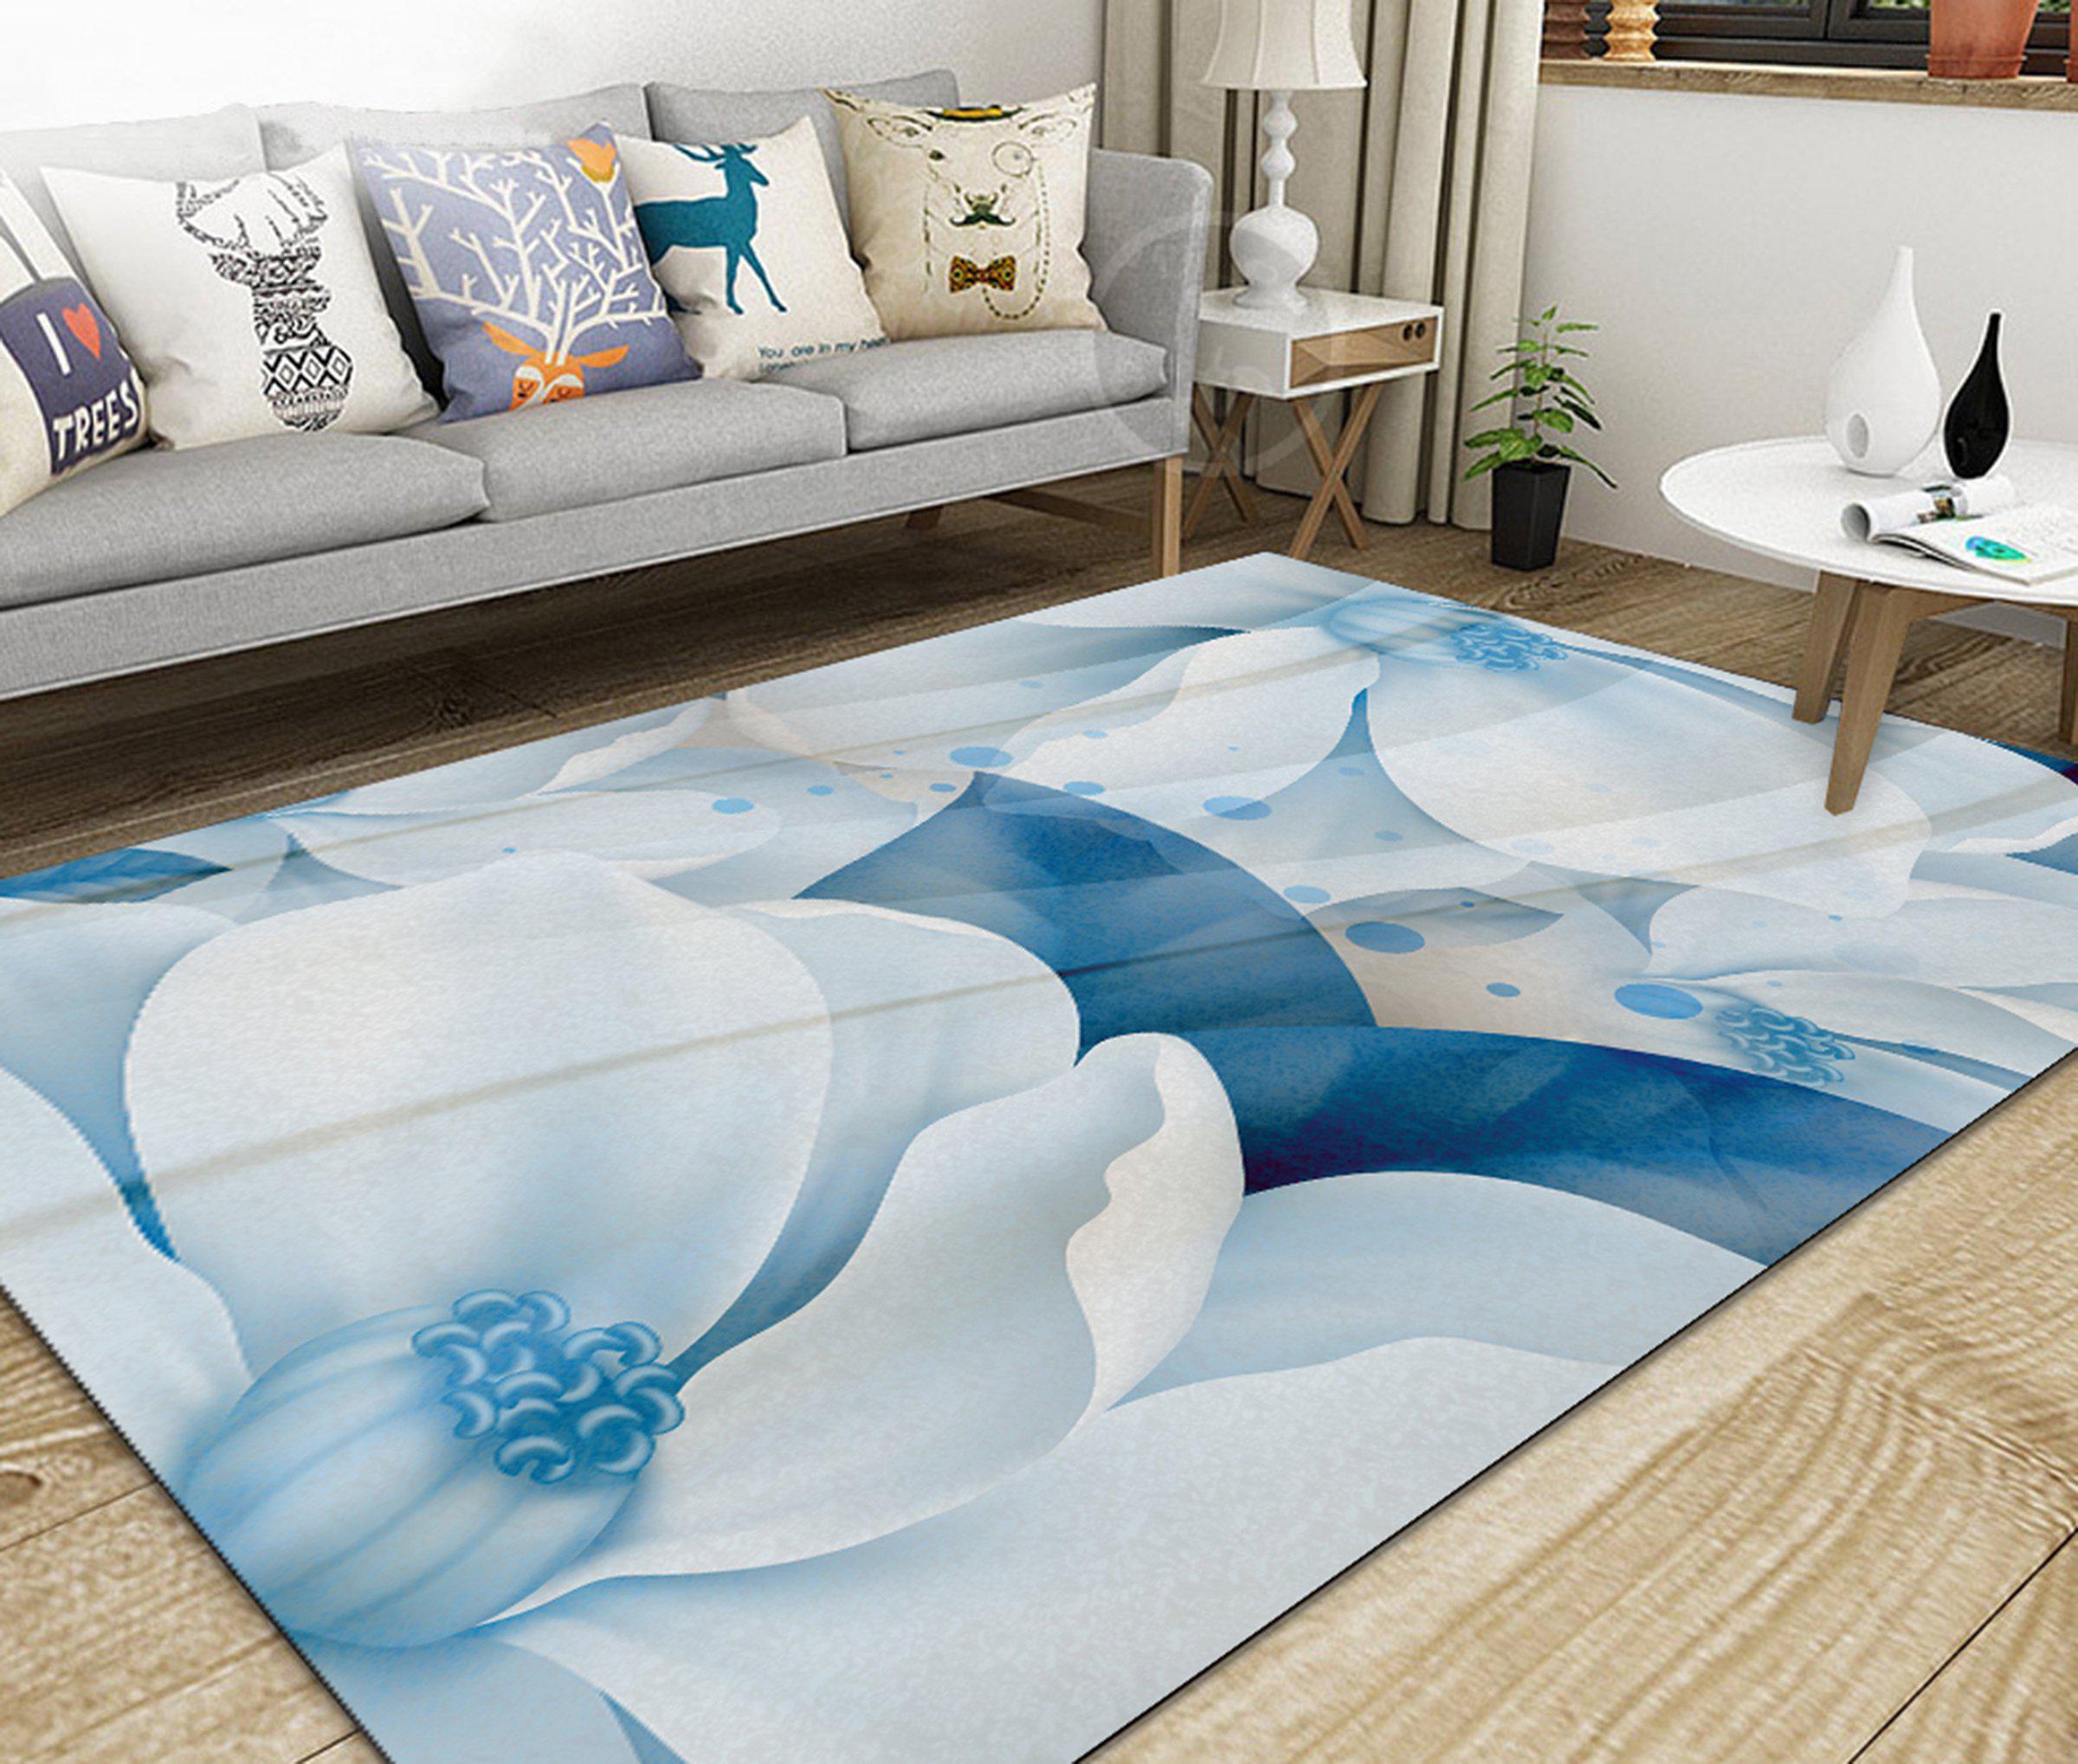 3D Home Carpet White Flower WG425 Non Slip Rug Mat, 160cmx240cm (63"x94.5")